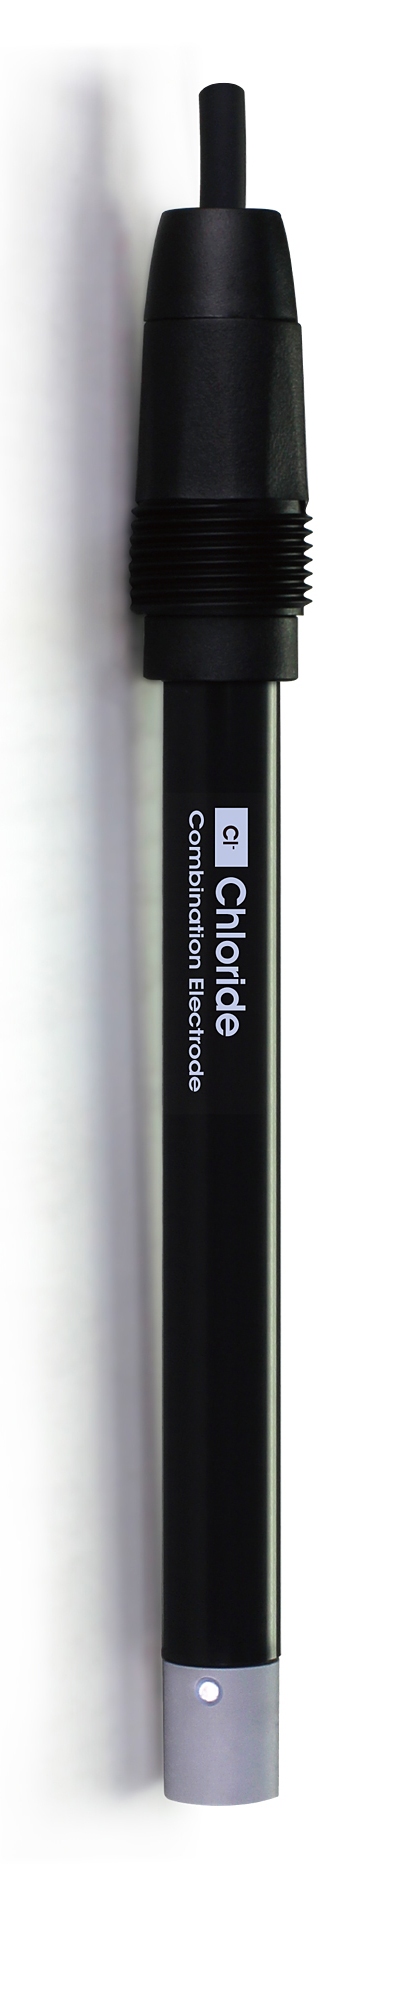 CS6510Cl A Chloride Ion Selective Electrode sensor